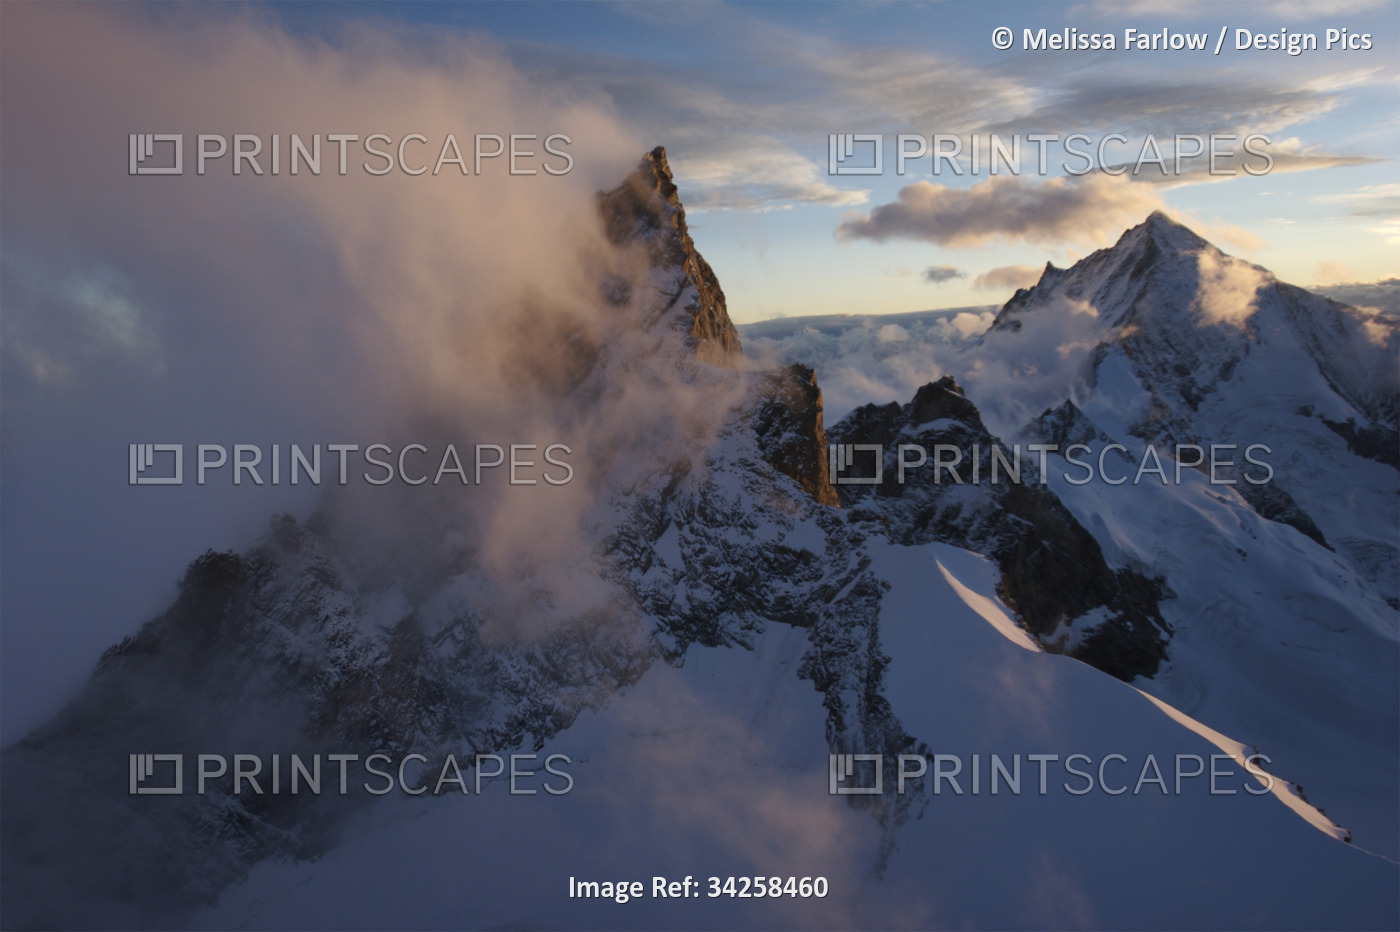 Alps near the Matterhorn; Zermatt, Switzerland